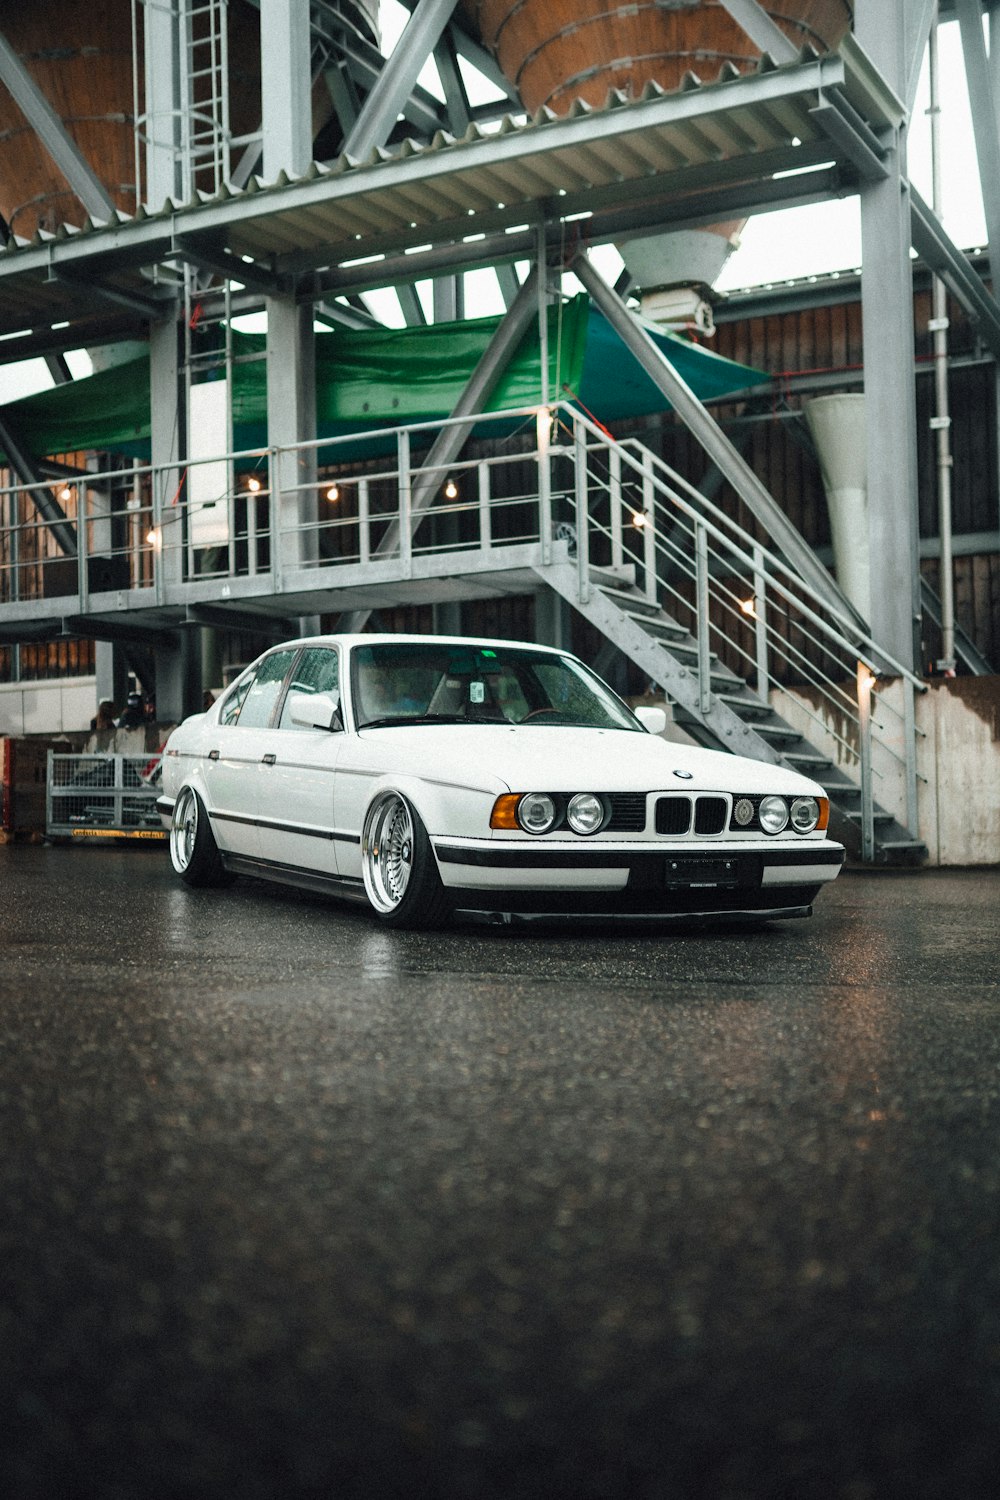 회색 콘크리트 포장도로에 주차된 흰색 BMW M 3 쿠페